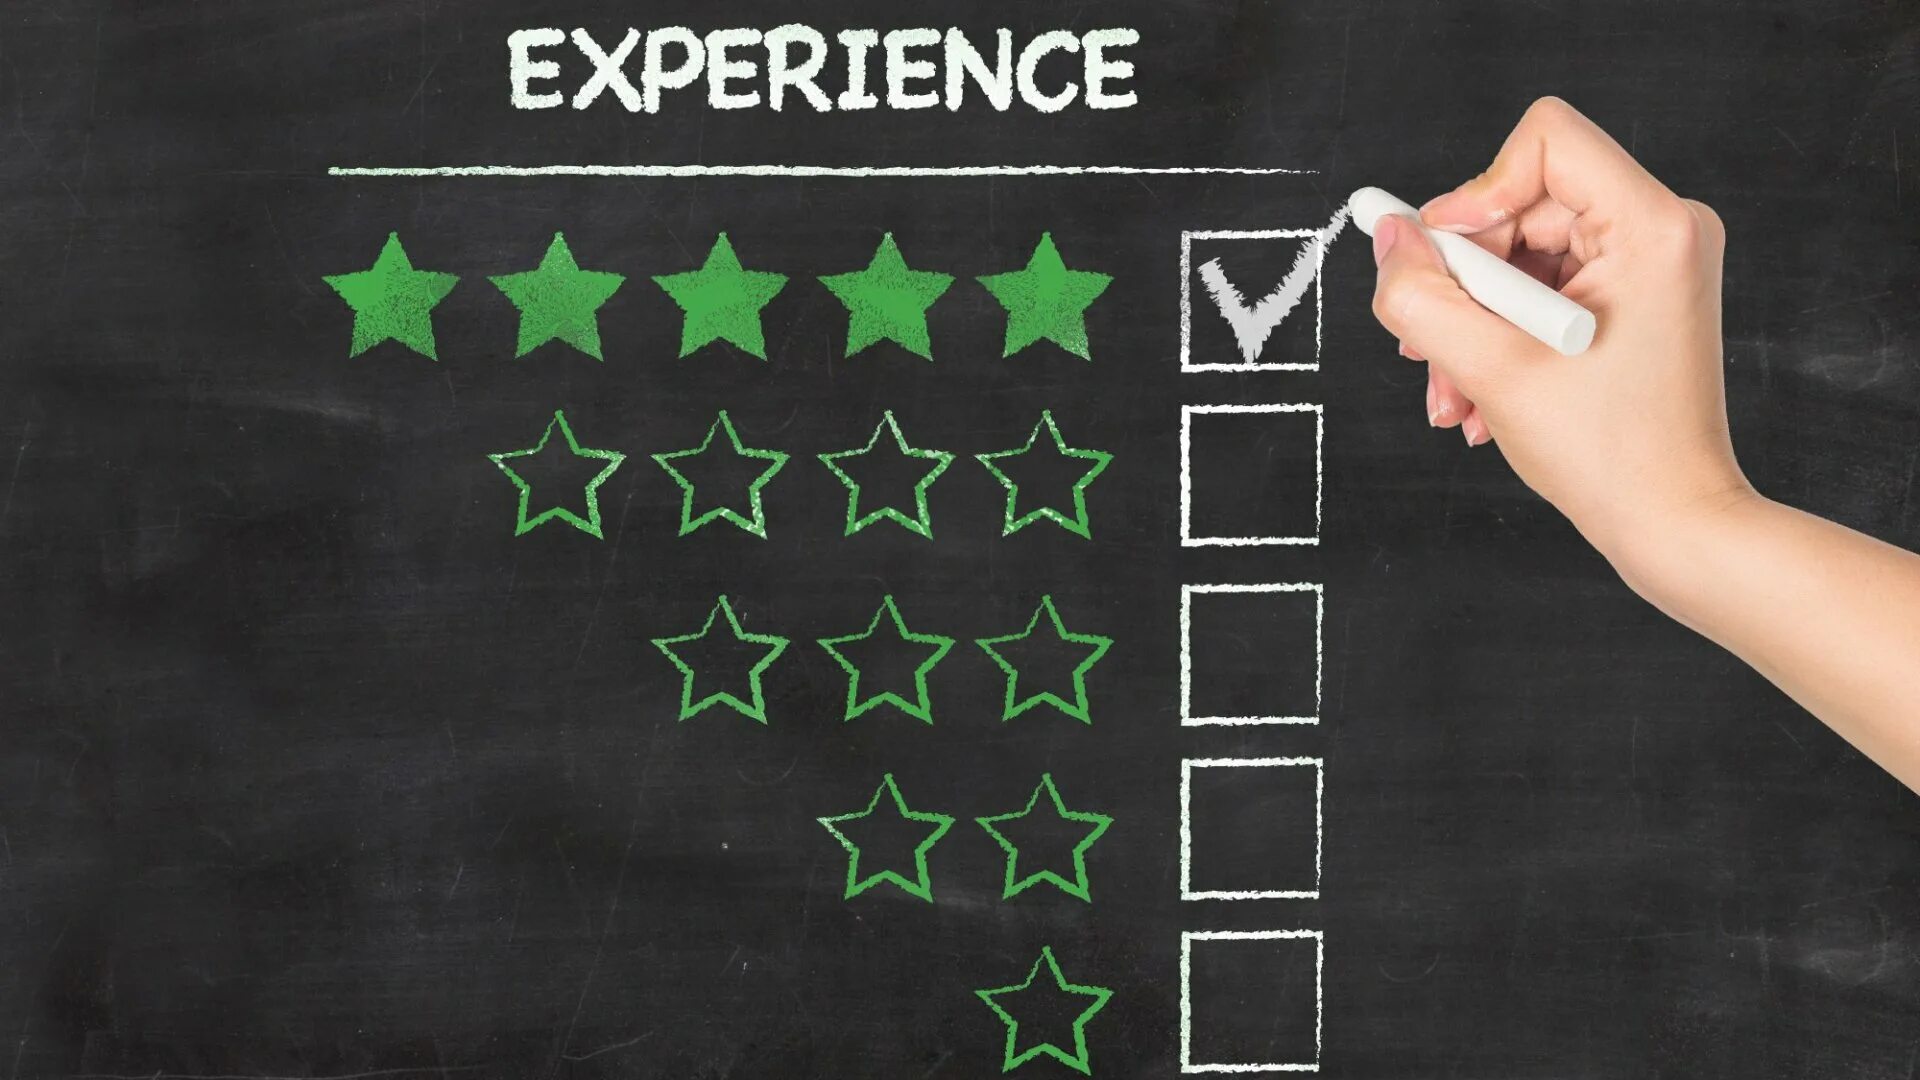 Quality experience. Experience. Experience опыт. My experience. Be my experience.